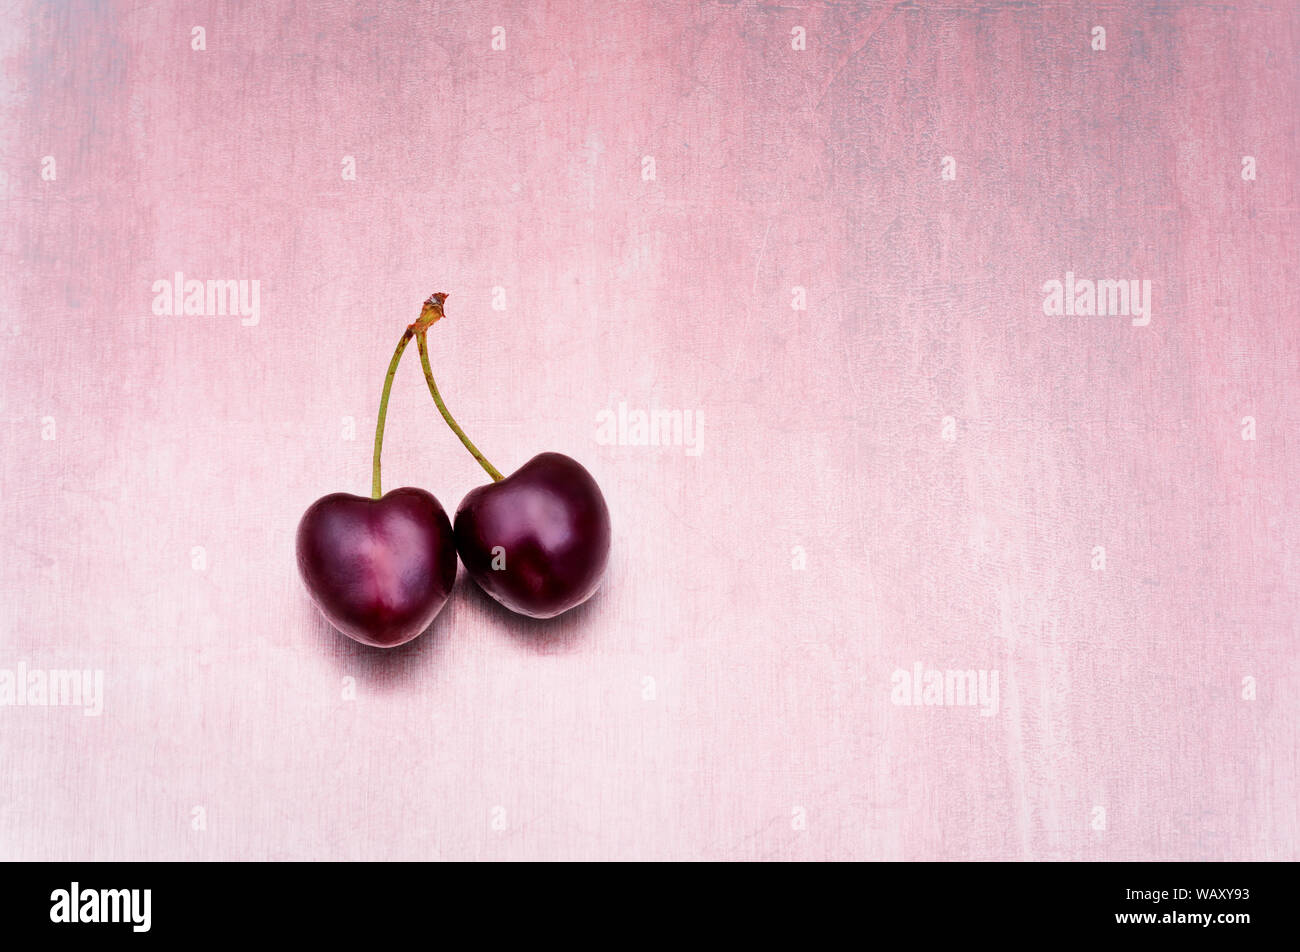 Concepto de compañerismo en un ambiente minimalista imagen de dos cerezas uno con forma de corazón se unieron contra un fondo de color rosa Foto de stock